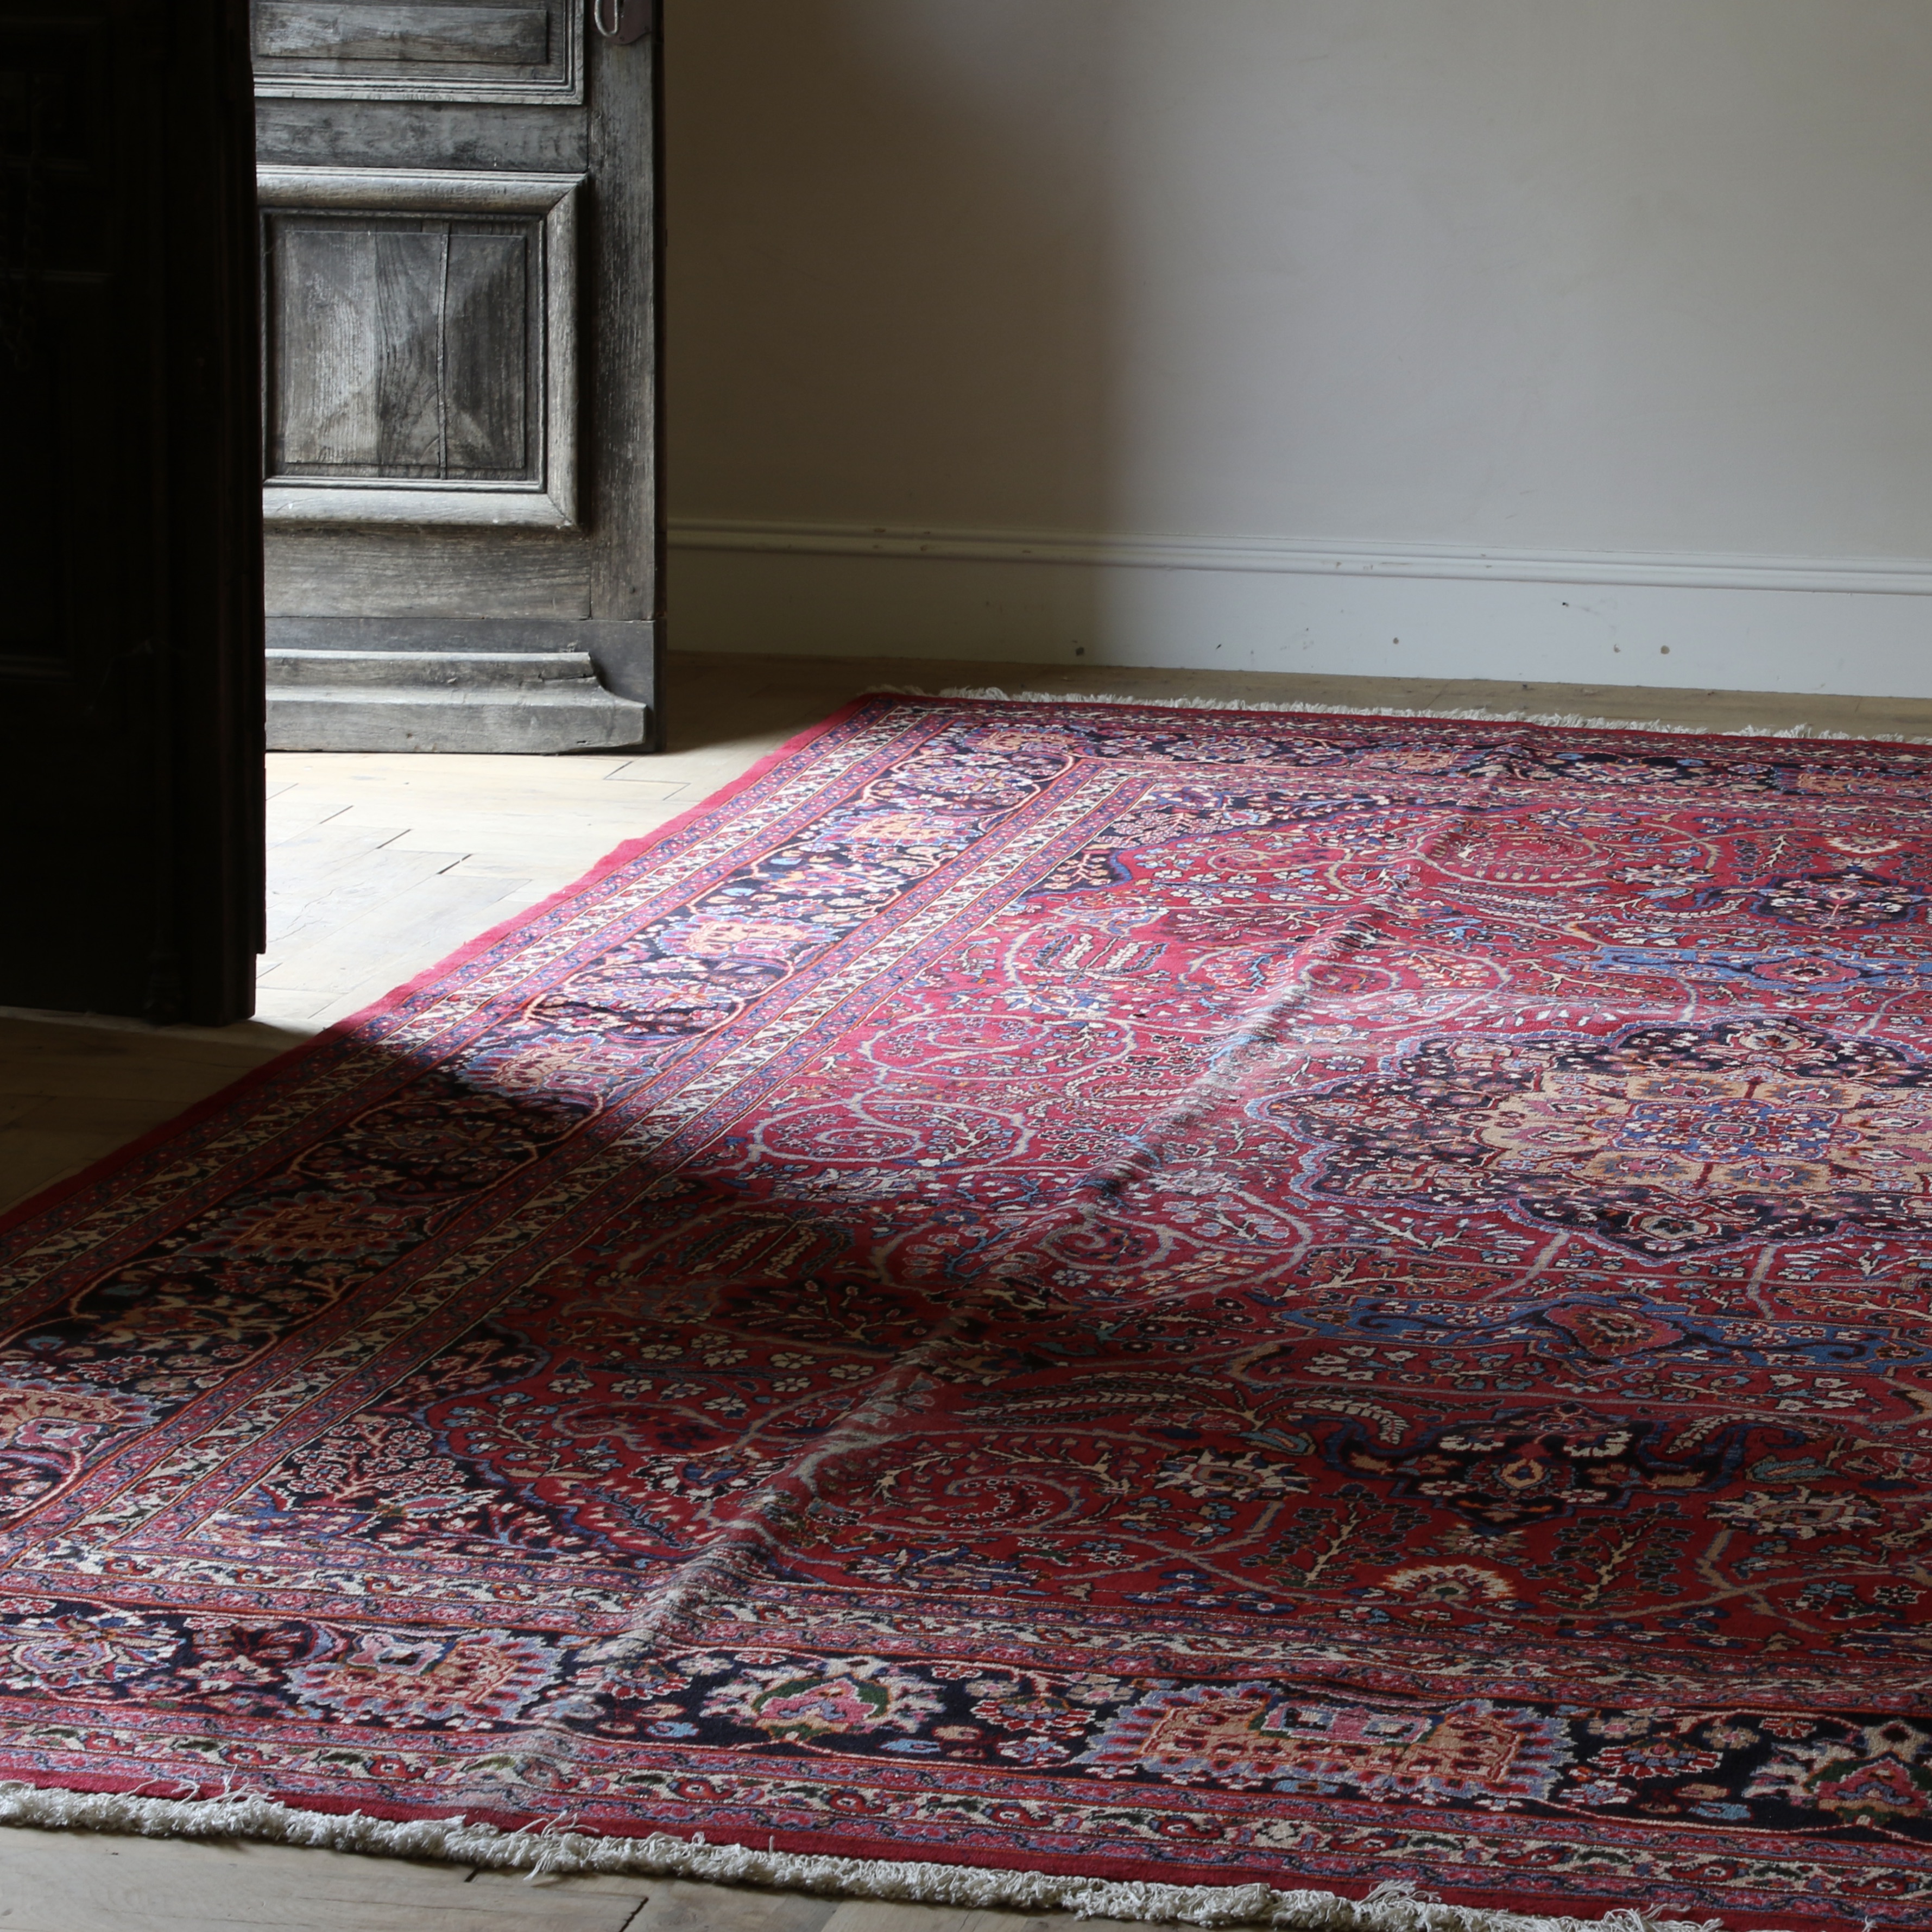 142-79 - Iranian Carpet